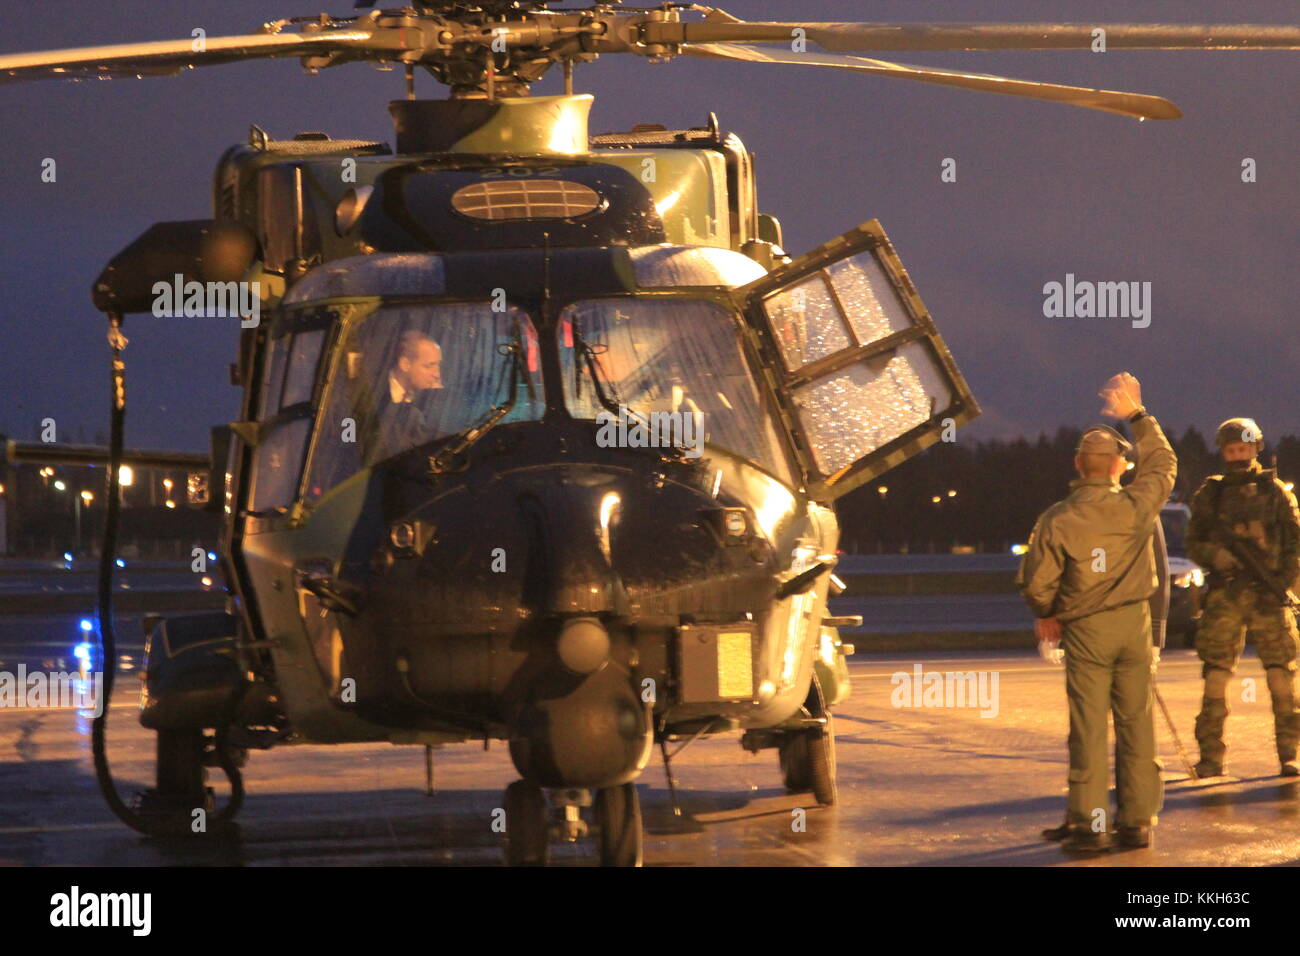 Vantaa, Finnland. 30. November 2017. Prinz William sich mit einer NH90 Hubschrauber vertraut machen. Heini Kettunen/Alamy Live Newsews Stockfoto